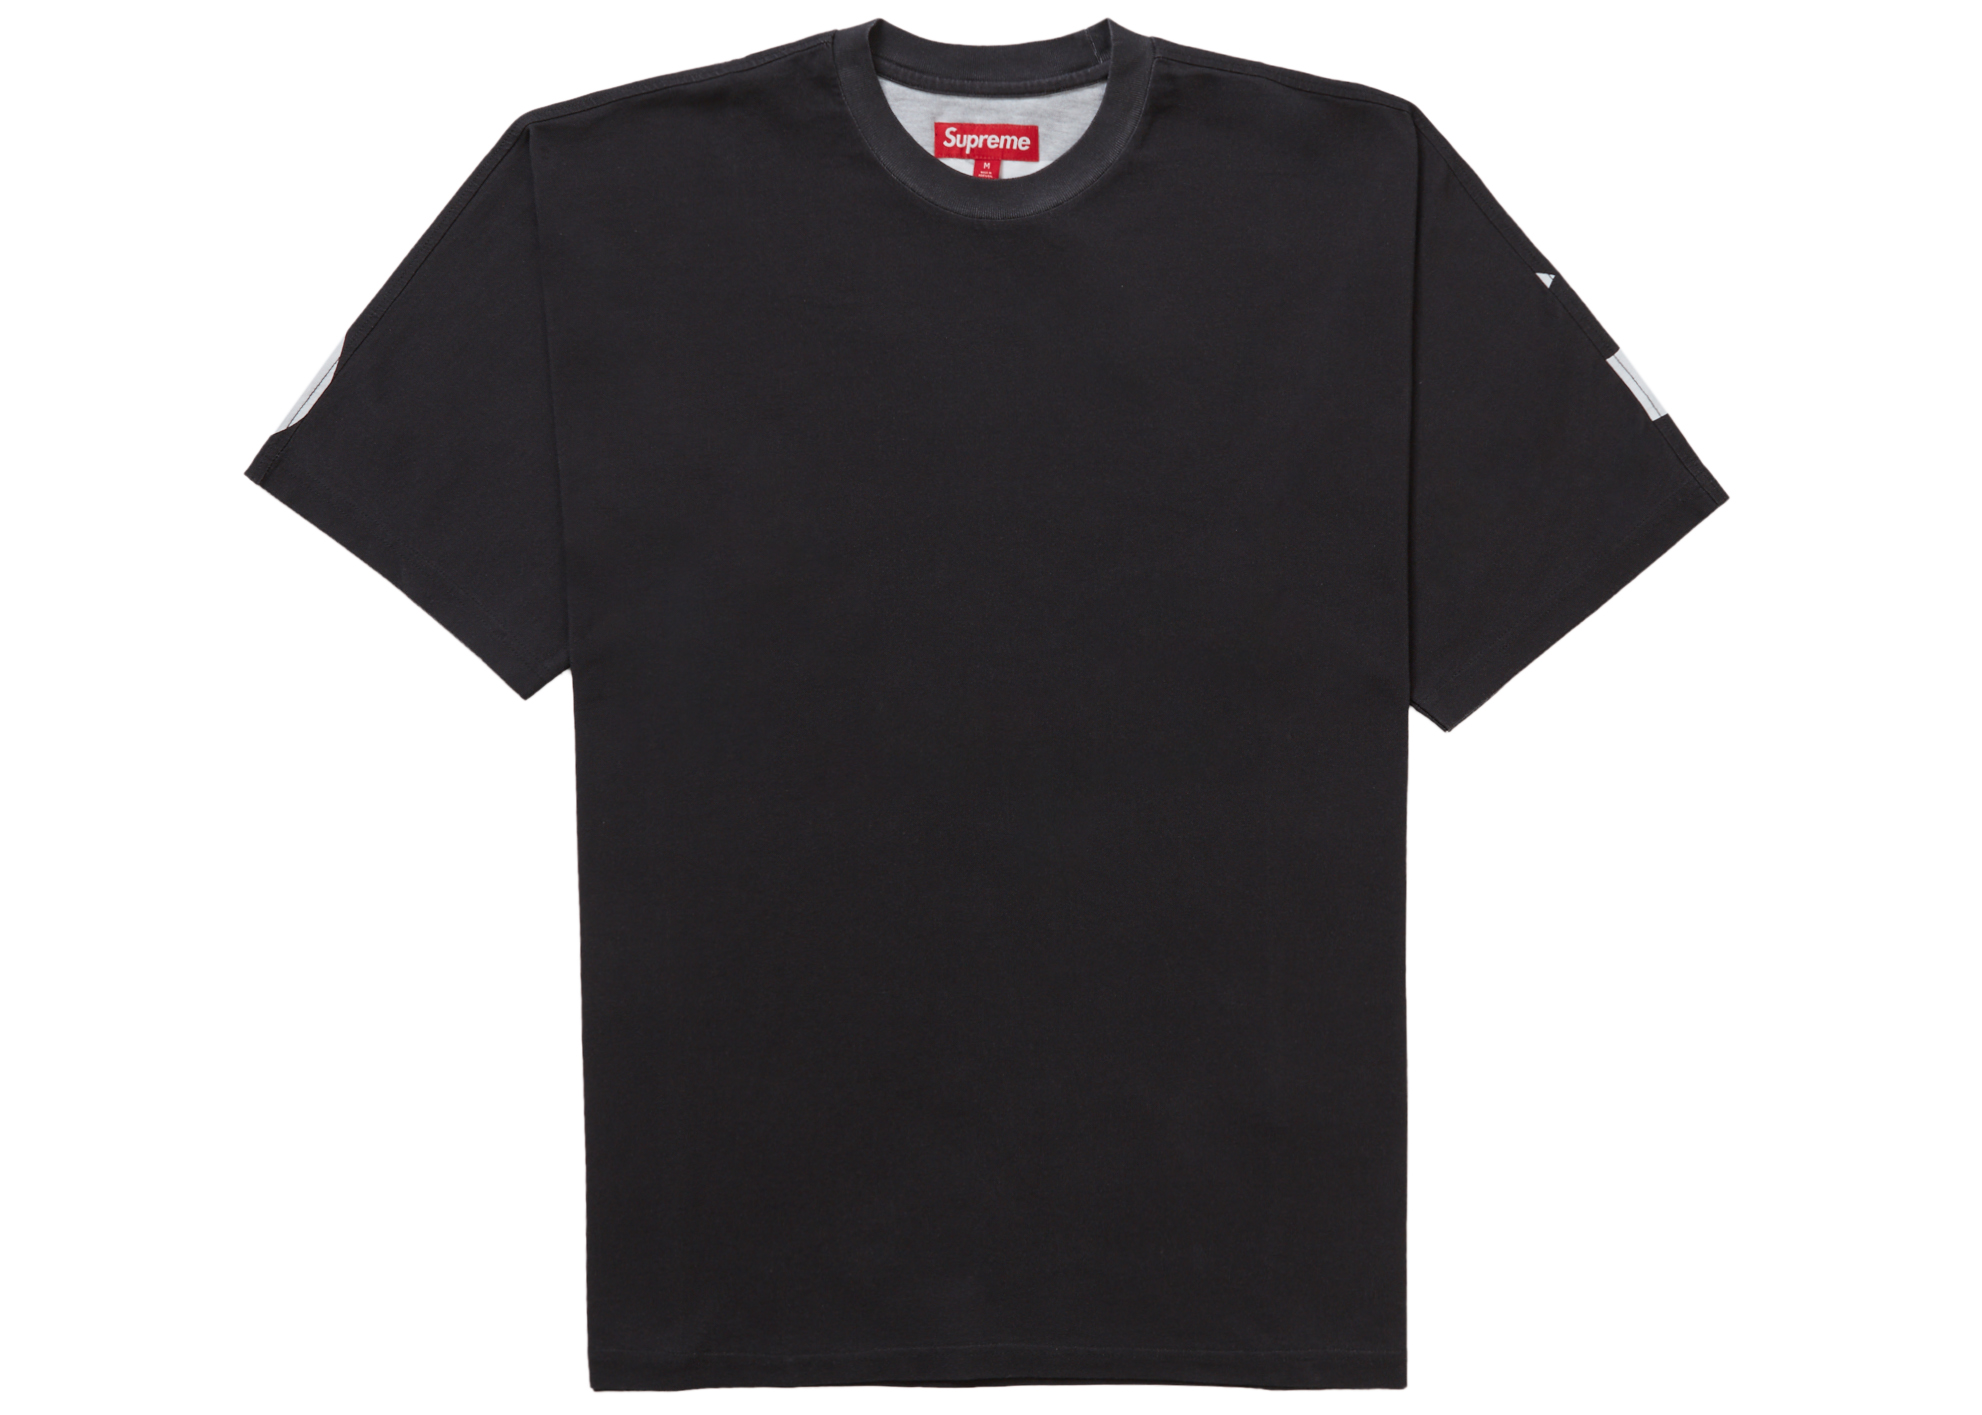 カラーBLACK黒【M】Supreme Split S/S Top スプリット Tシャツ ブラック